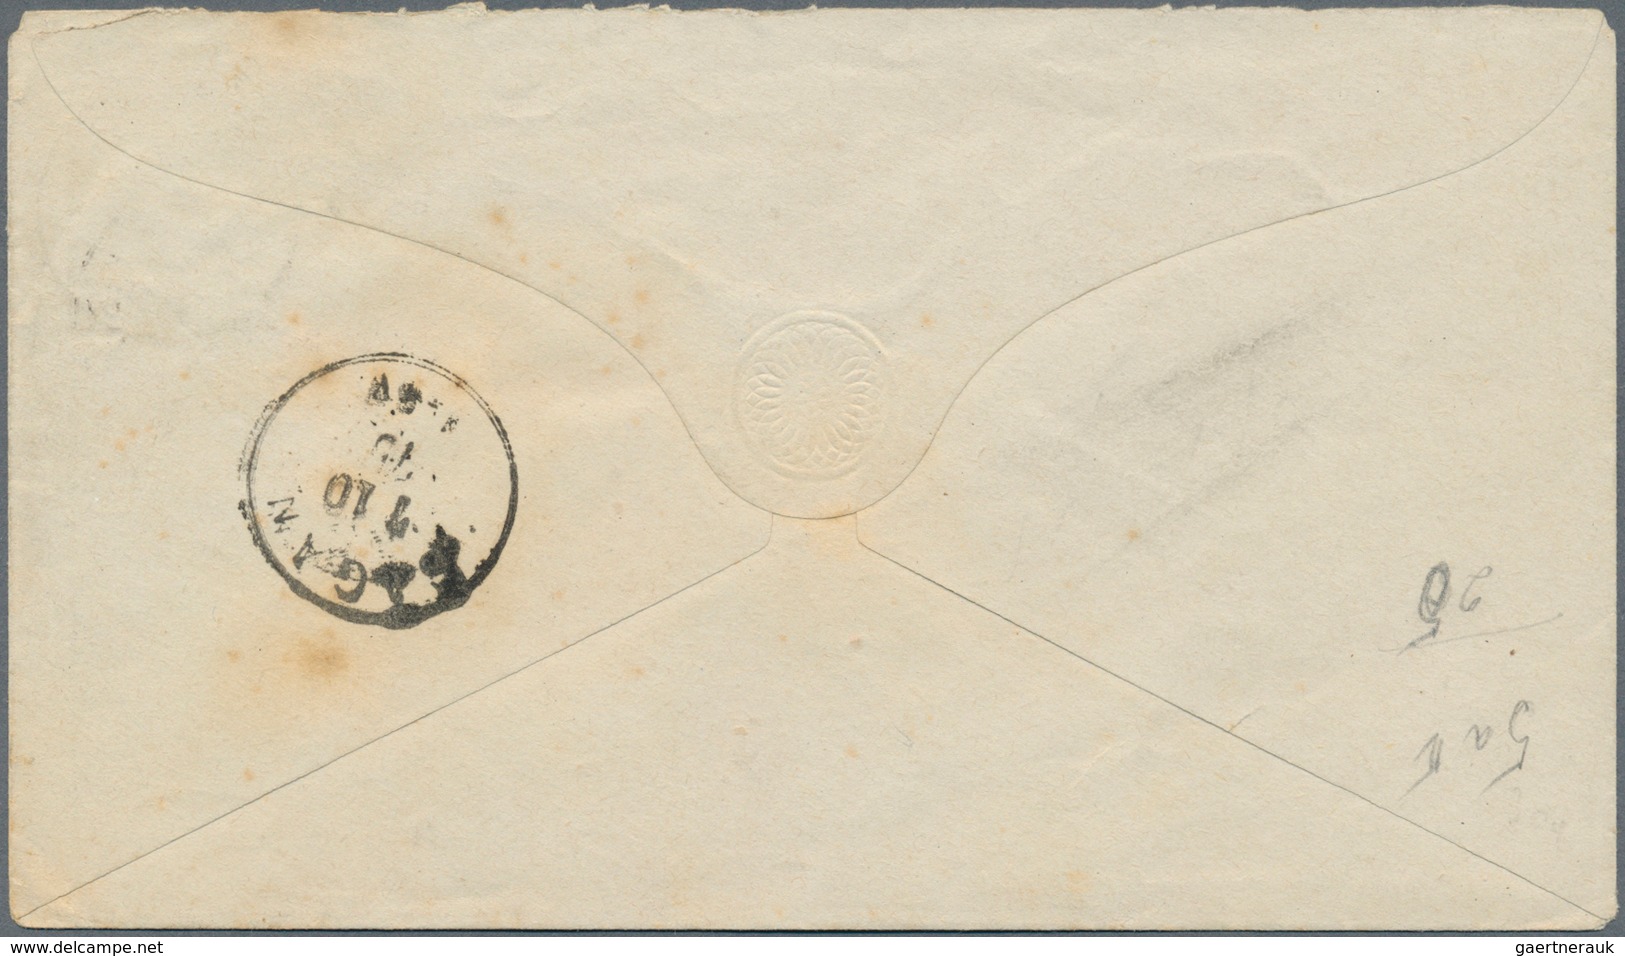 17873 Deutsches Reich - Brustschild: 1875, Zwei Brustschild-Marken, drei GA und ein Brief mit Reichspost-N